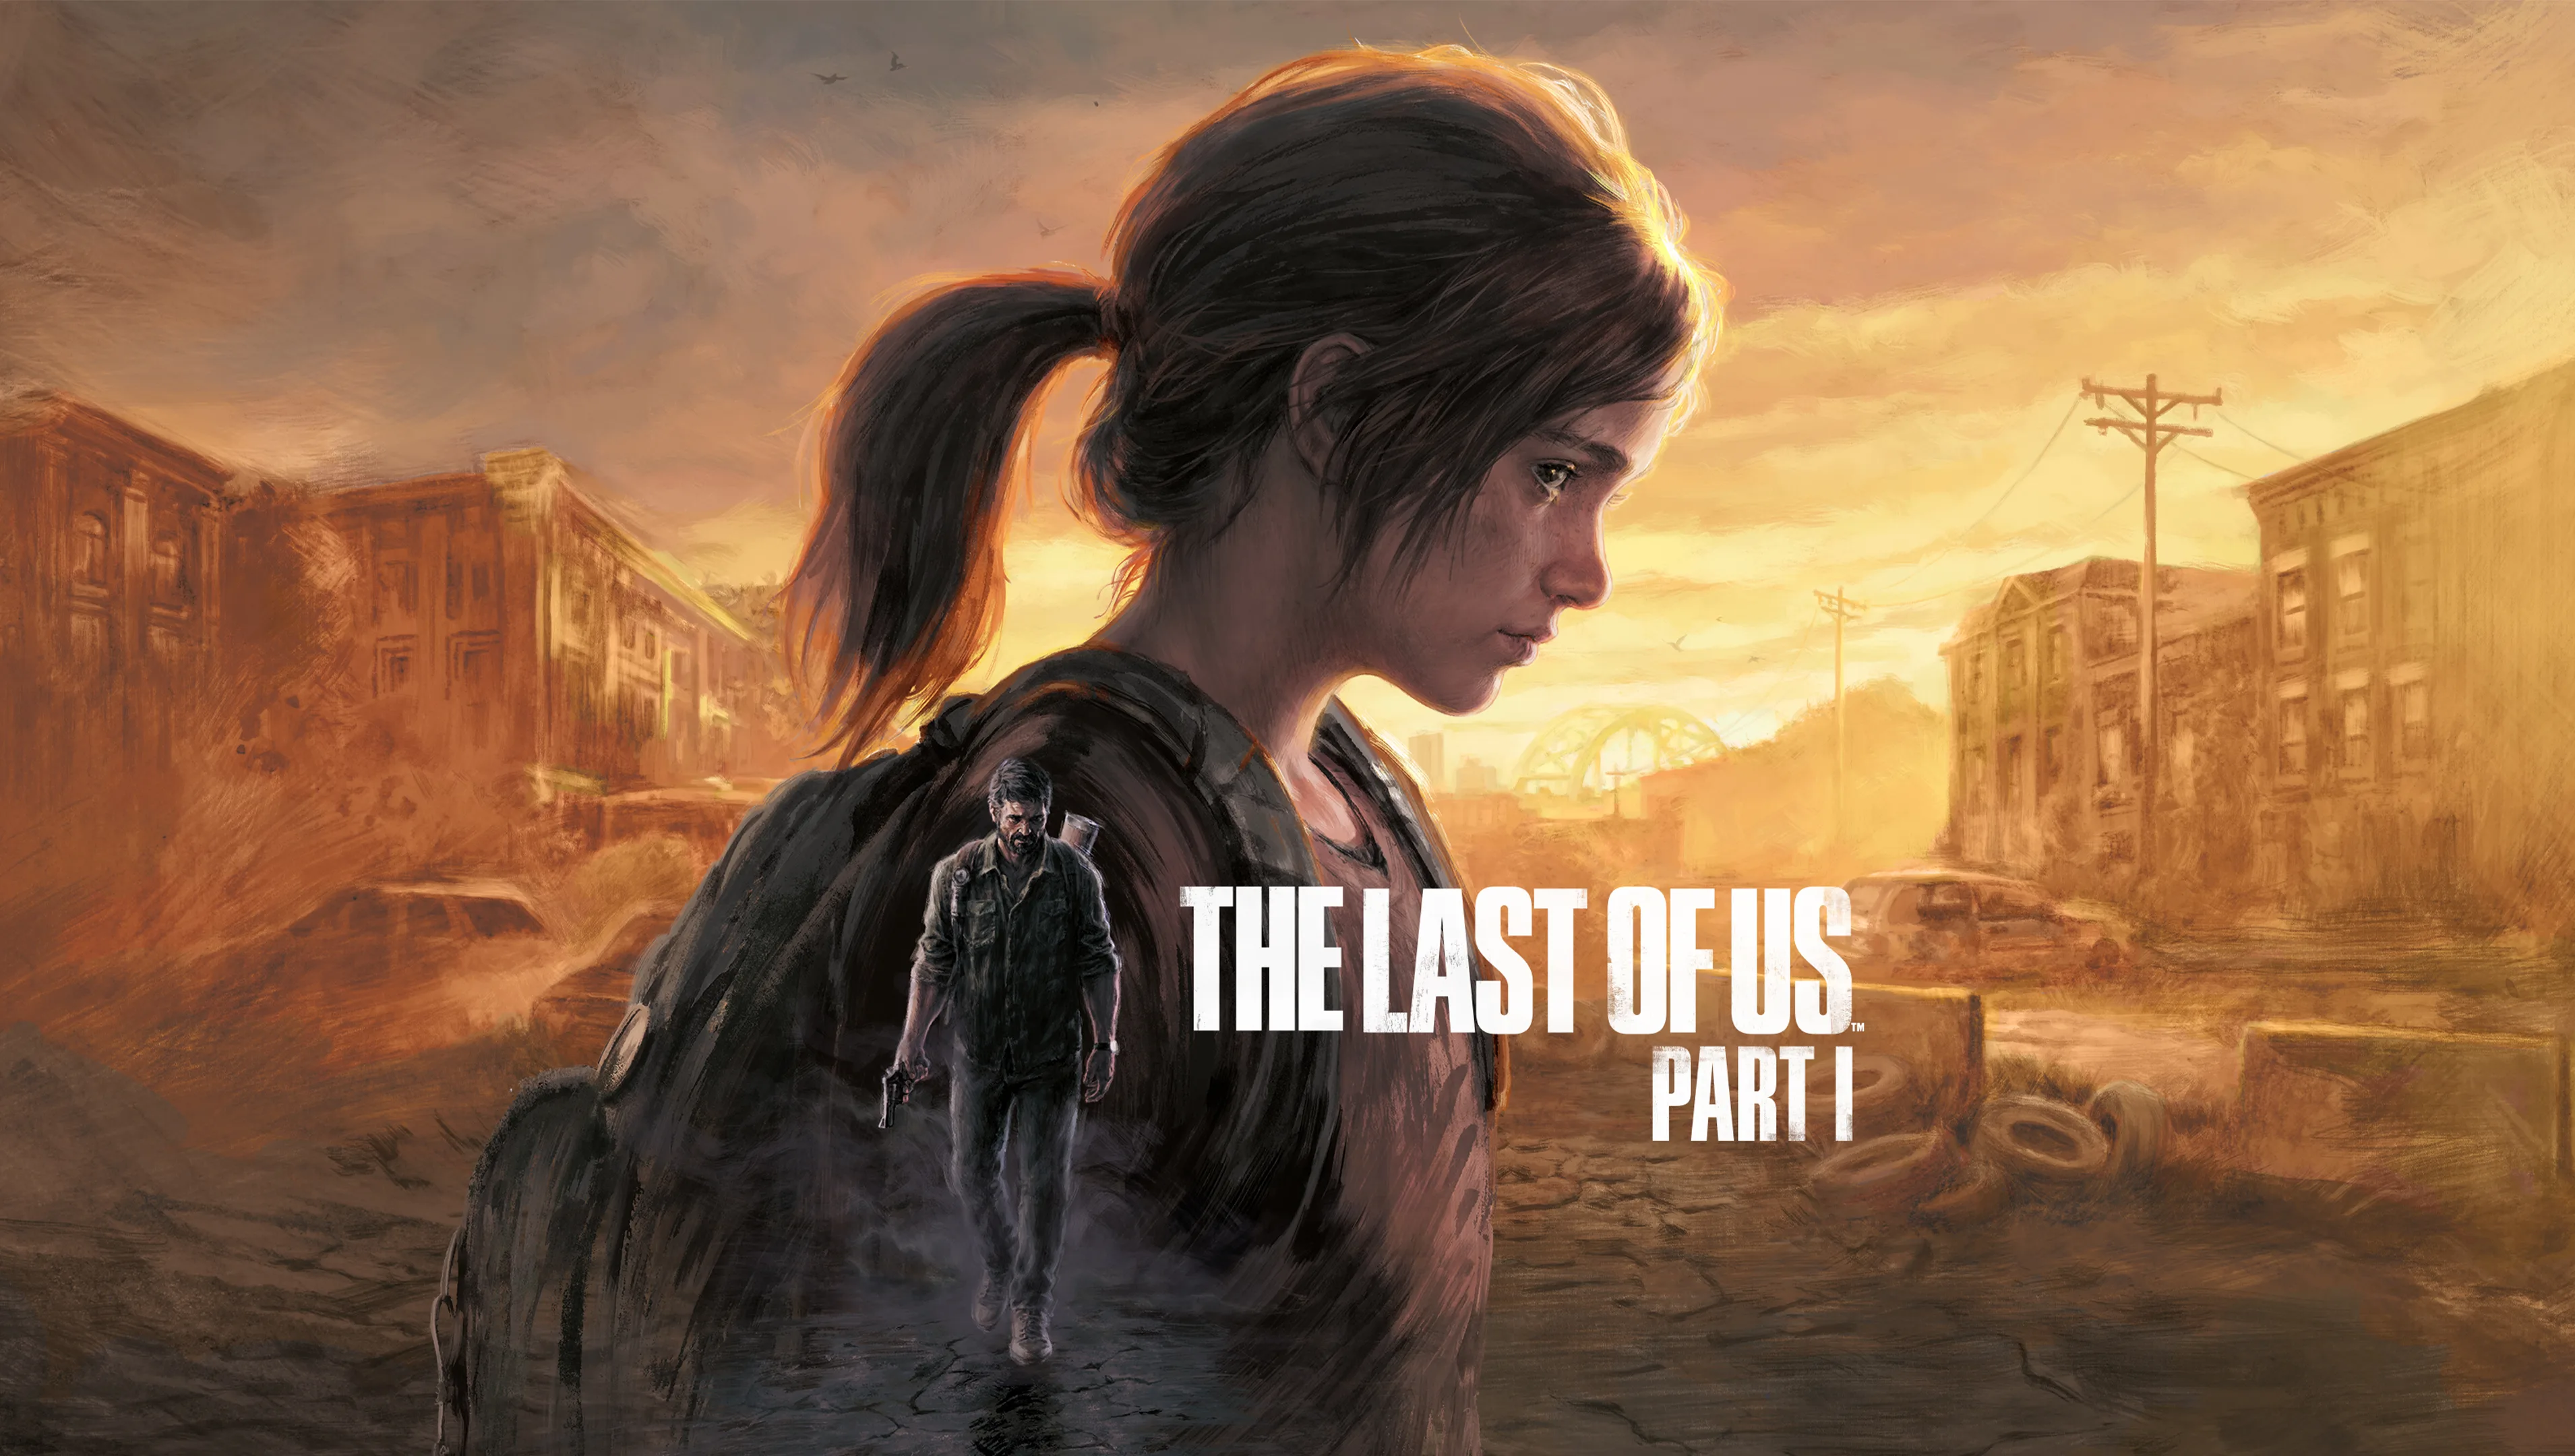 顽皮狗发布了《最后生还者》重制版的 PlayStation 5 游戏视频。